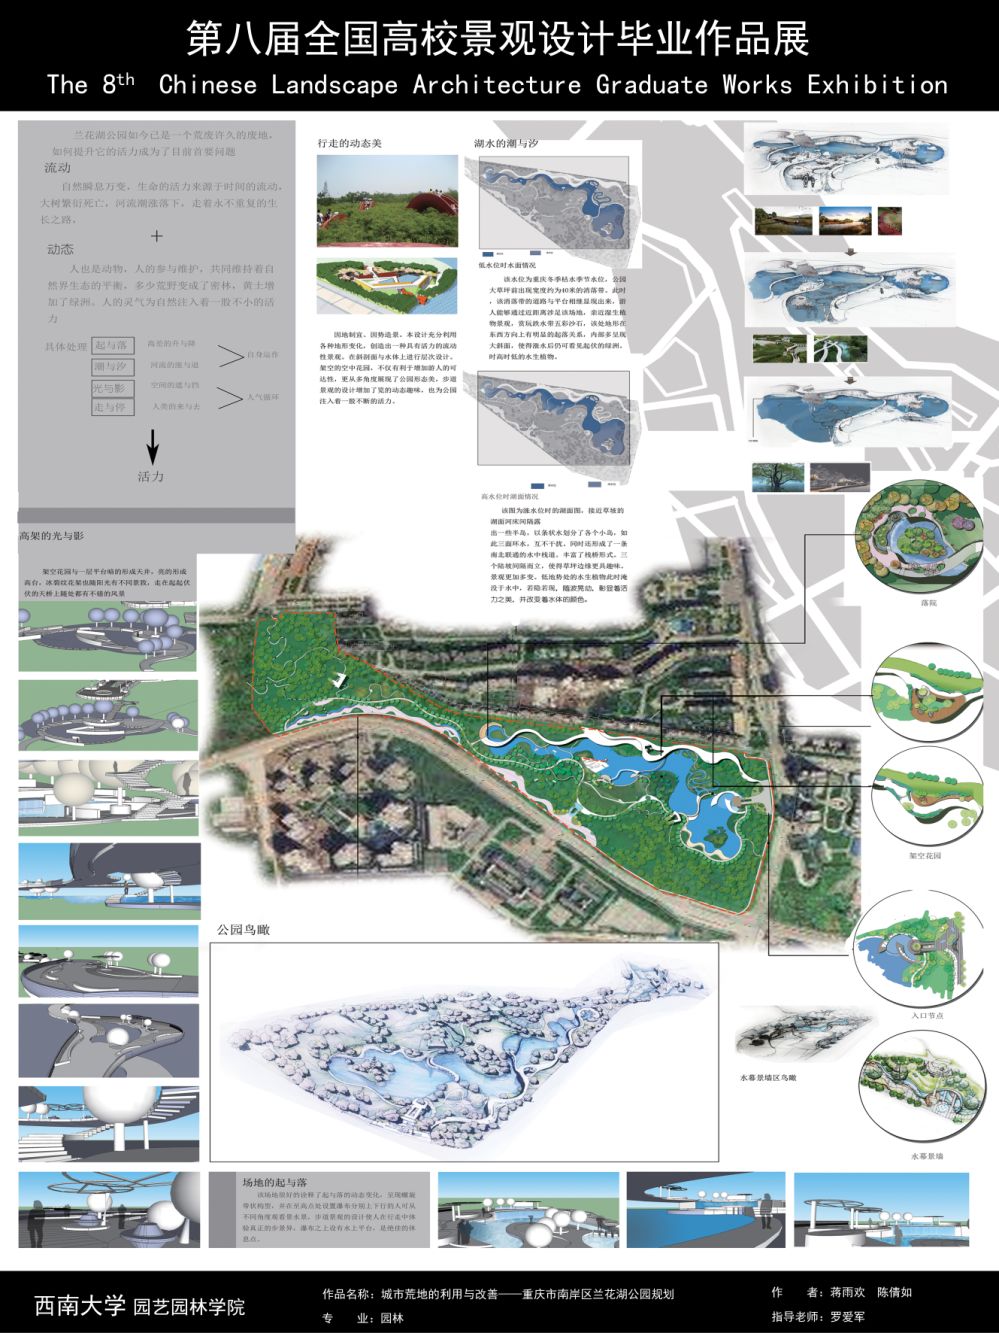 城市荒地的利用与改良——重庆市南岸区兰花湖公园规划...-2